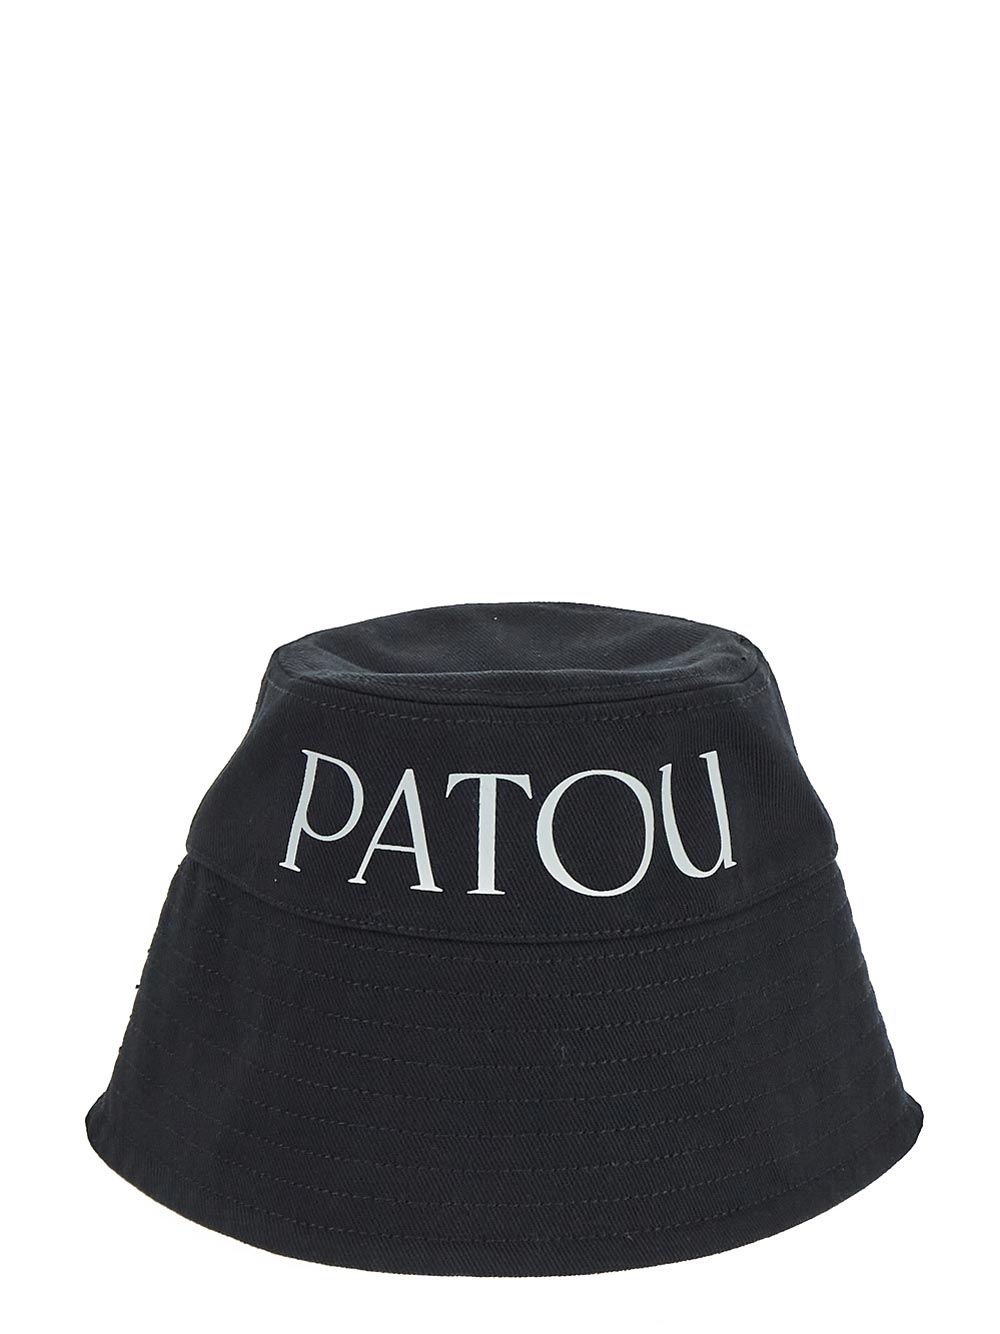 Patou PATOU Hat black AC0270132999B